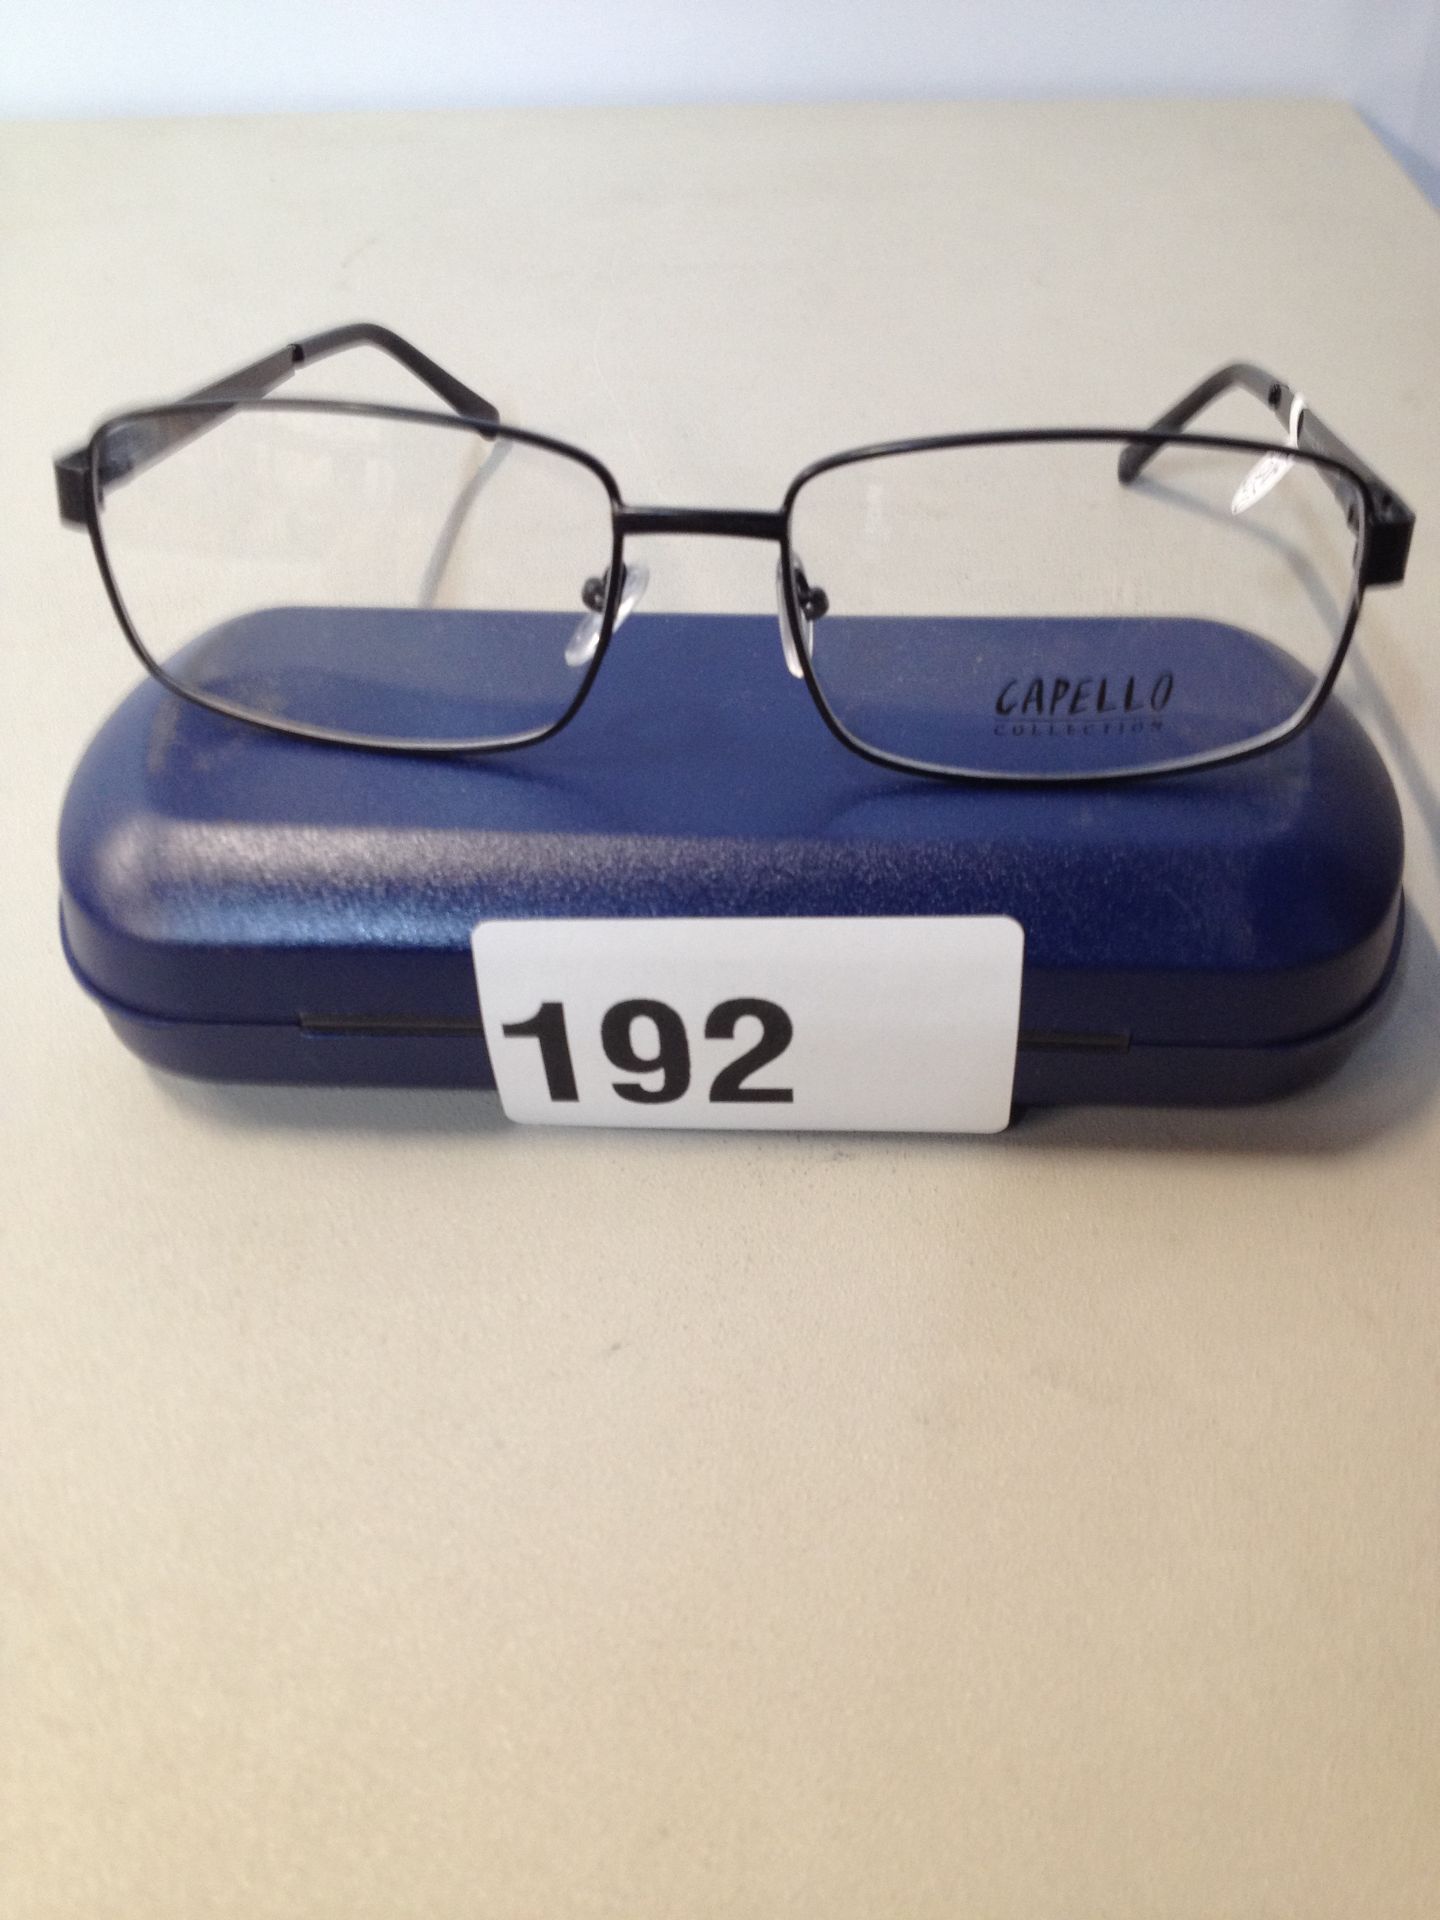 1 x Capello Glasses